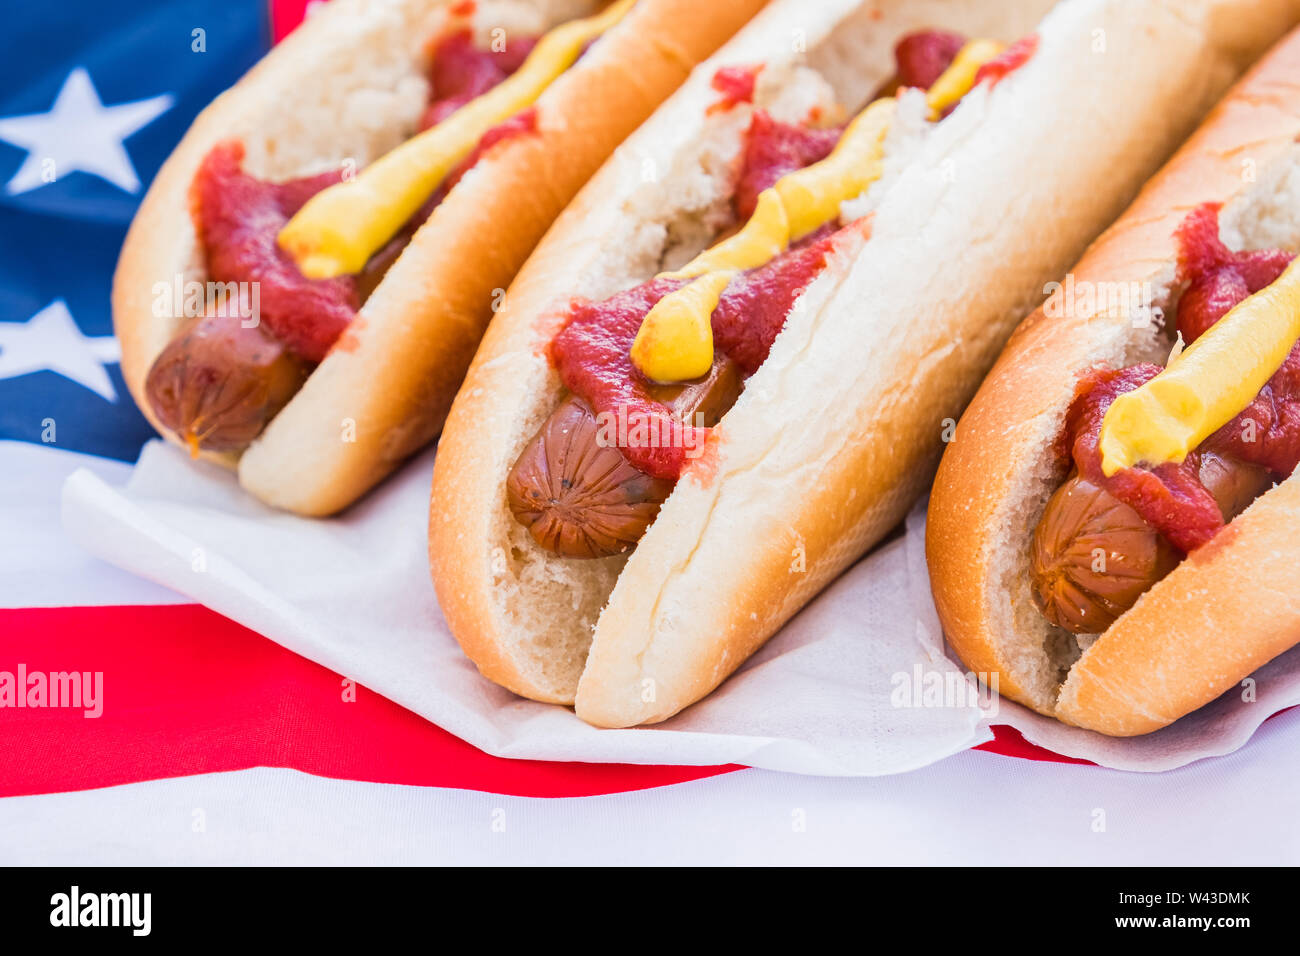 Hot dogs mit Ketchup und Senf, Nahaufnahme. American fast food Konzept: Würstchen serviert und bereit zu essen Stockfoto